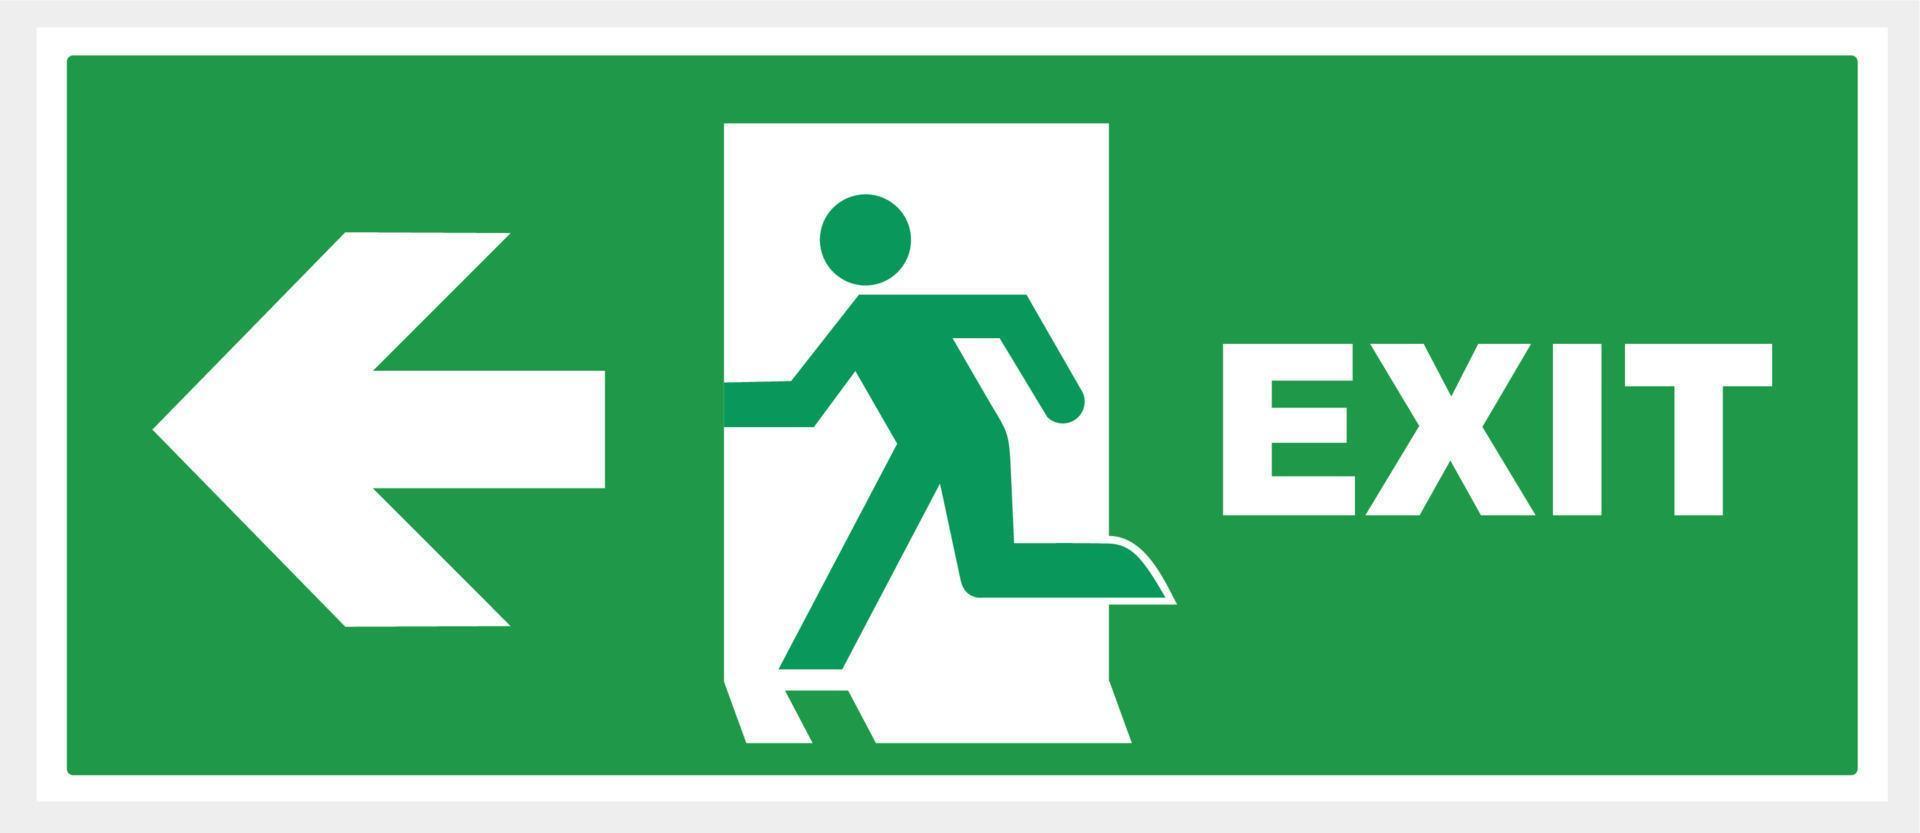 assine a seta de saída de emergência. fundo verde. ilustração vetor